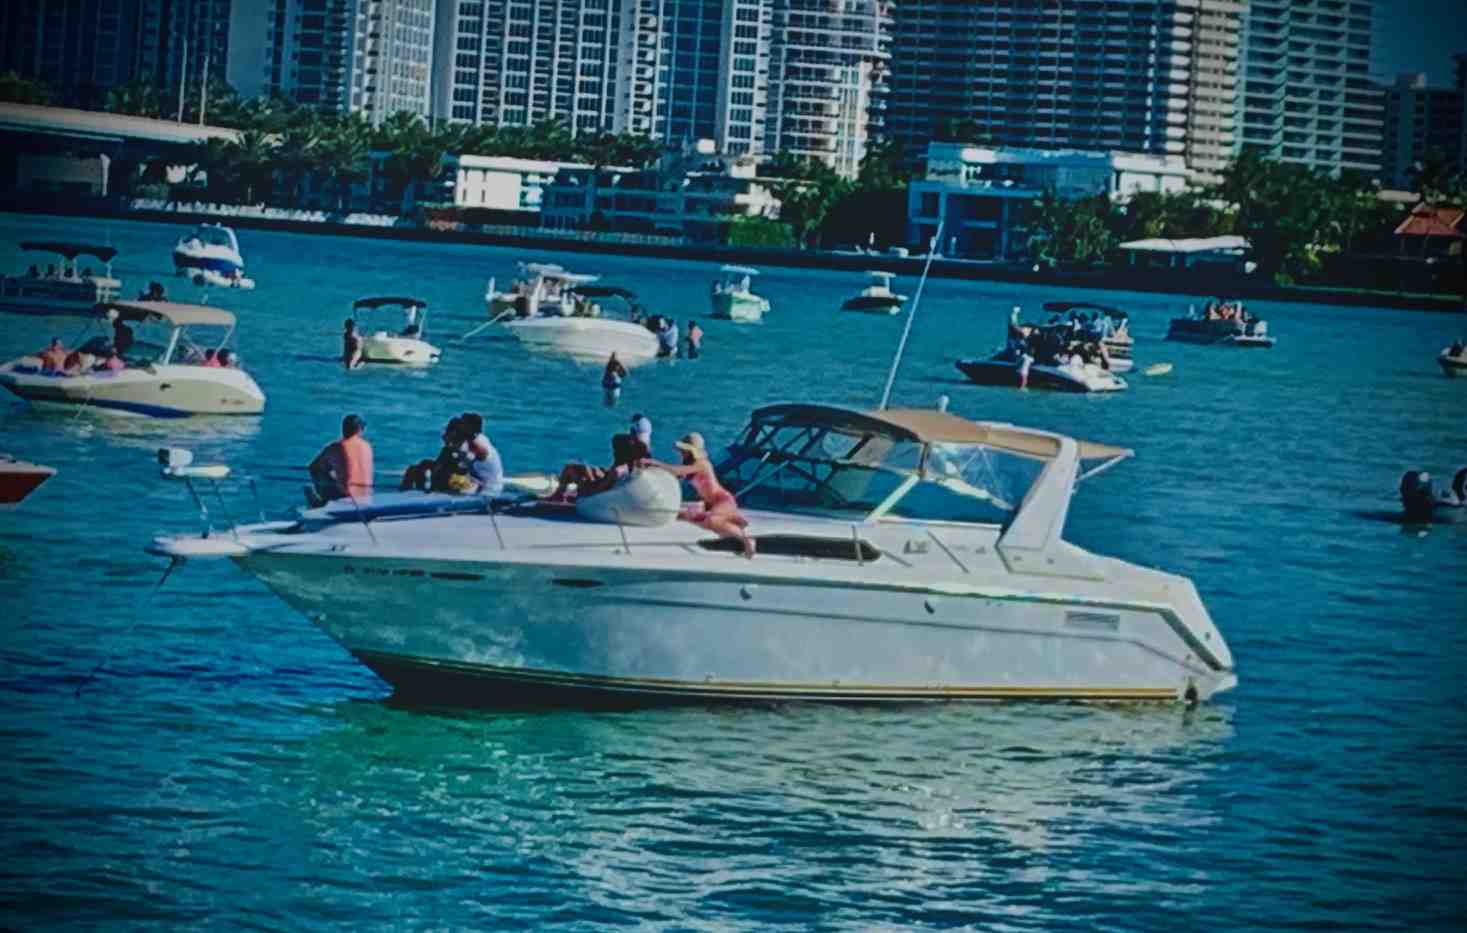  boat rentals Florida MIAMI BEACH Florida  SeaRay Cruiser Express 1999 41 